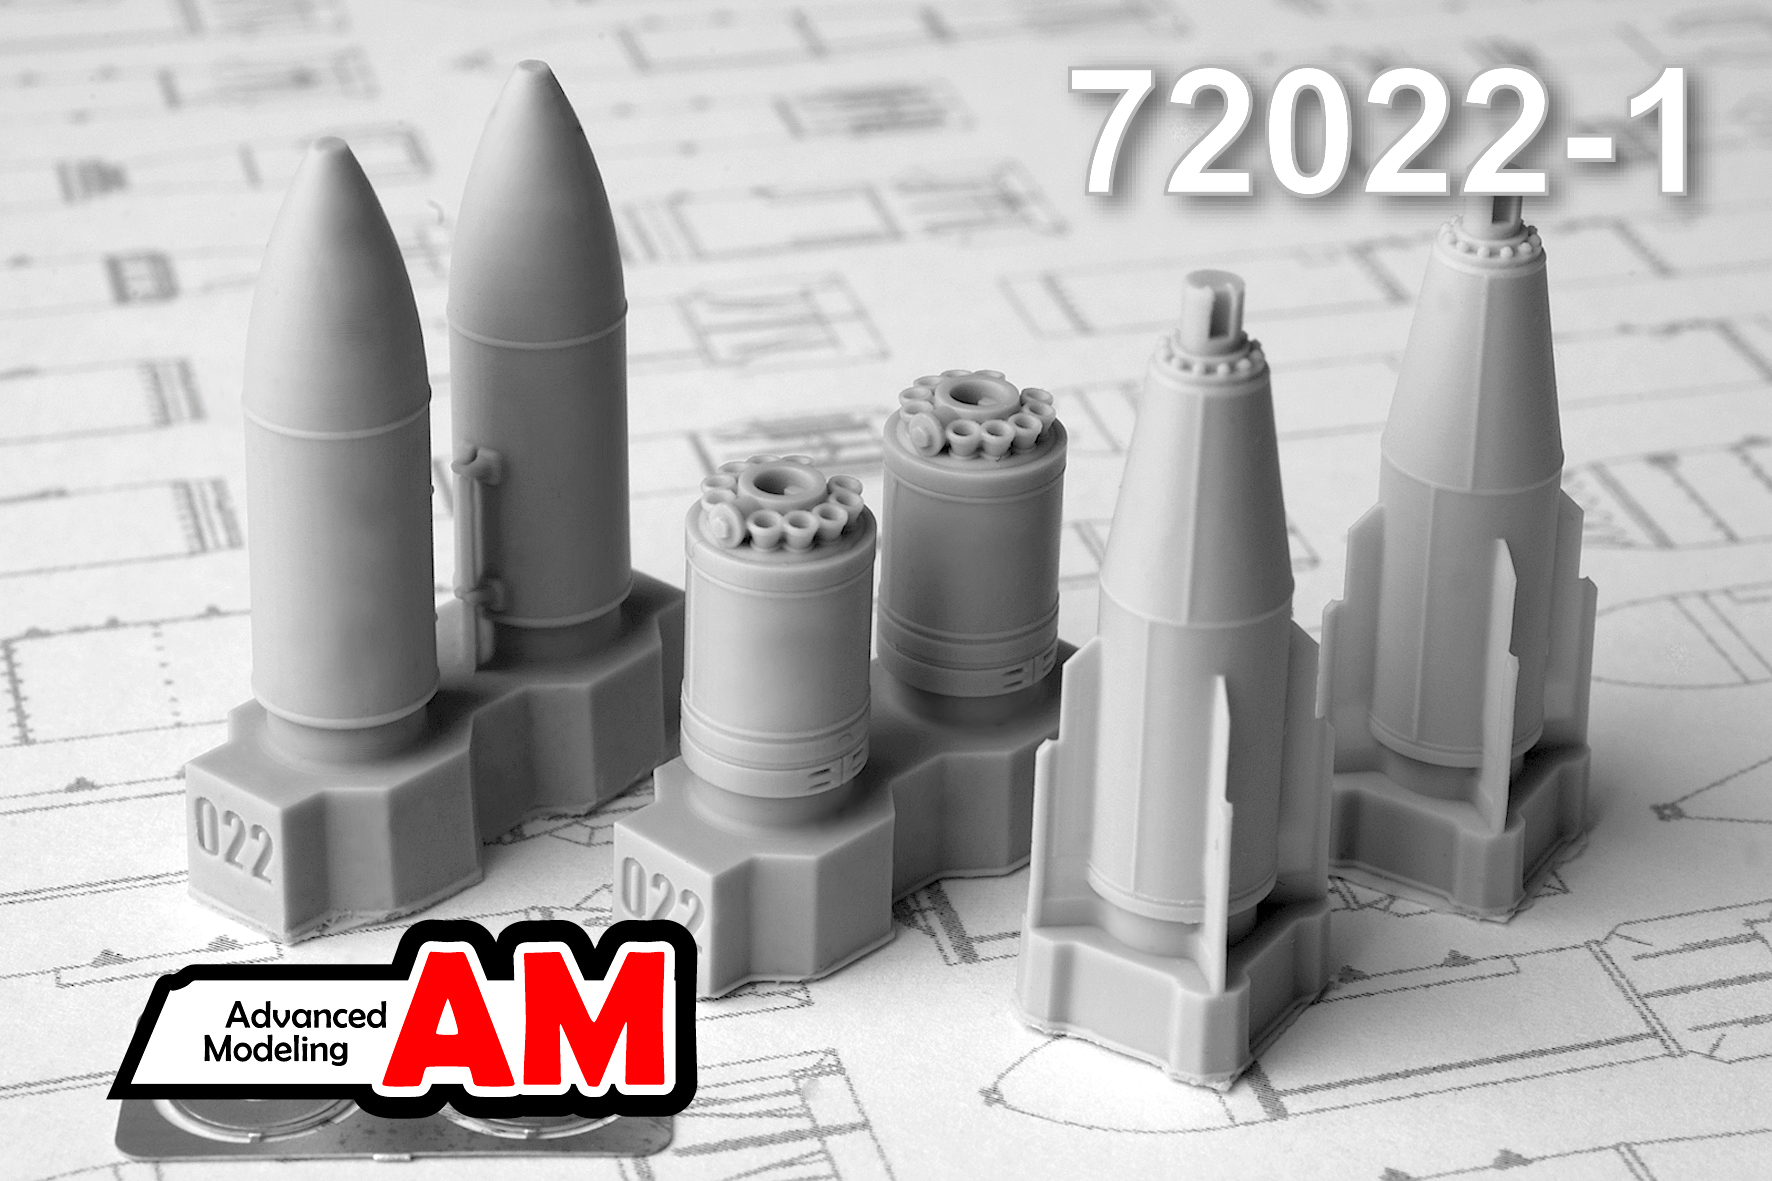 Дополнения из смолы 1/72 БЕТАБ-500ШП бетонобойная бомба поздних серий выпуска (Advanced Modeling)